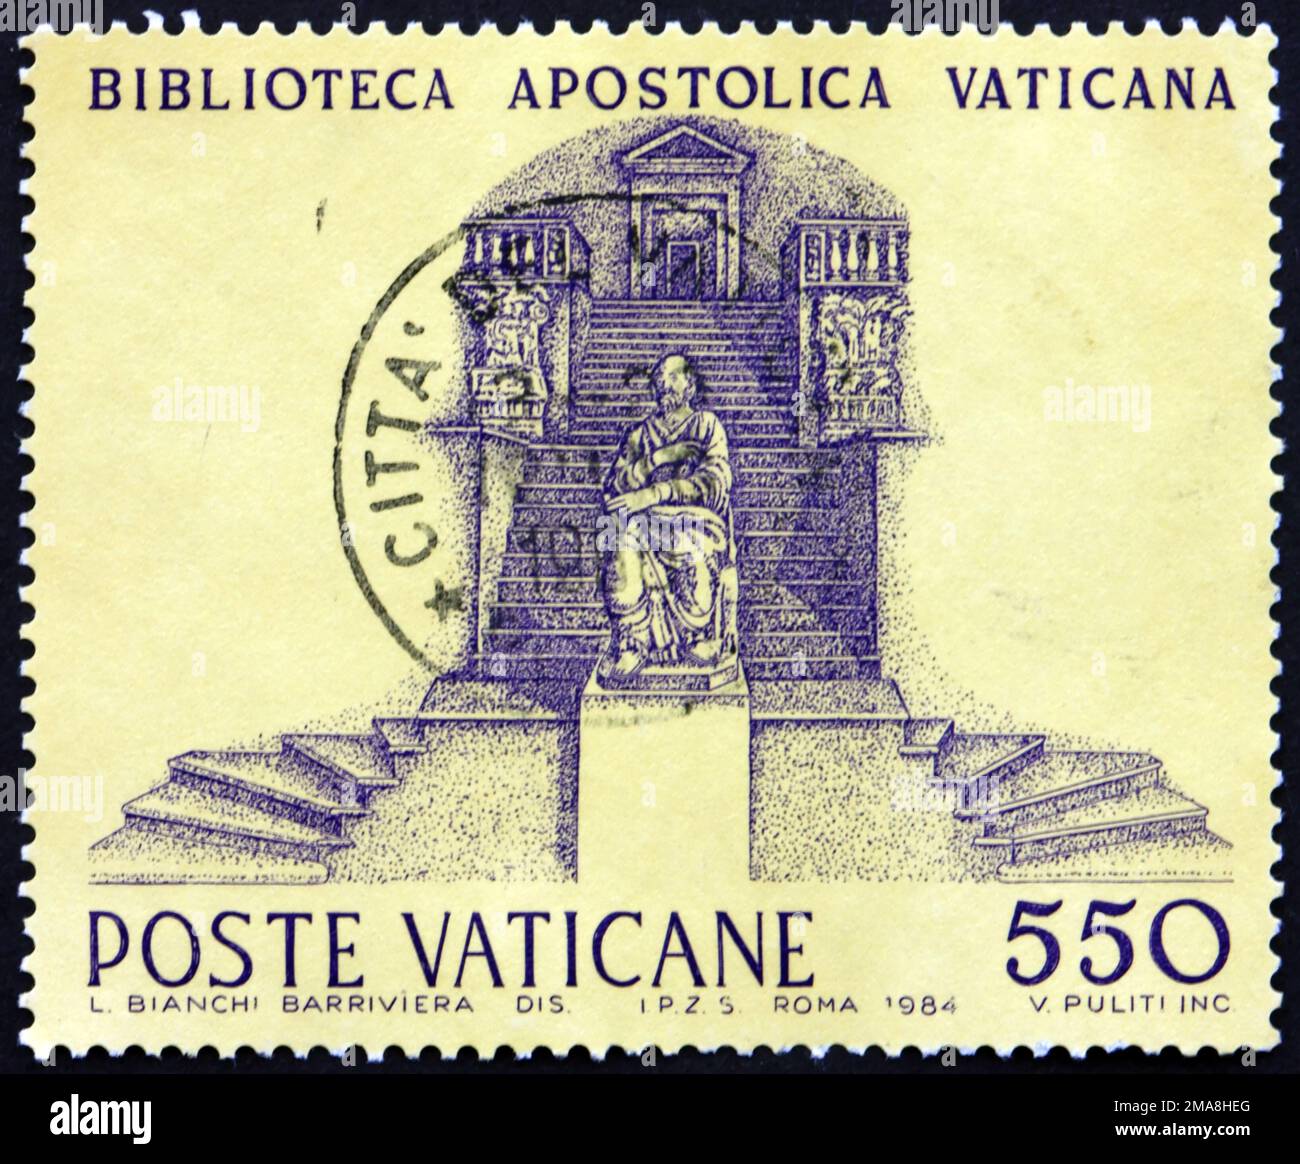 VATIKAN - CA. 1984: Ein im Vatikan gedruckter Stempel zeigt die apostolische Bibliothek, die apostolische Bibliothek des Vatikans, ca. 1984 Stockfoto